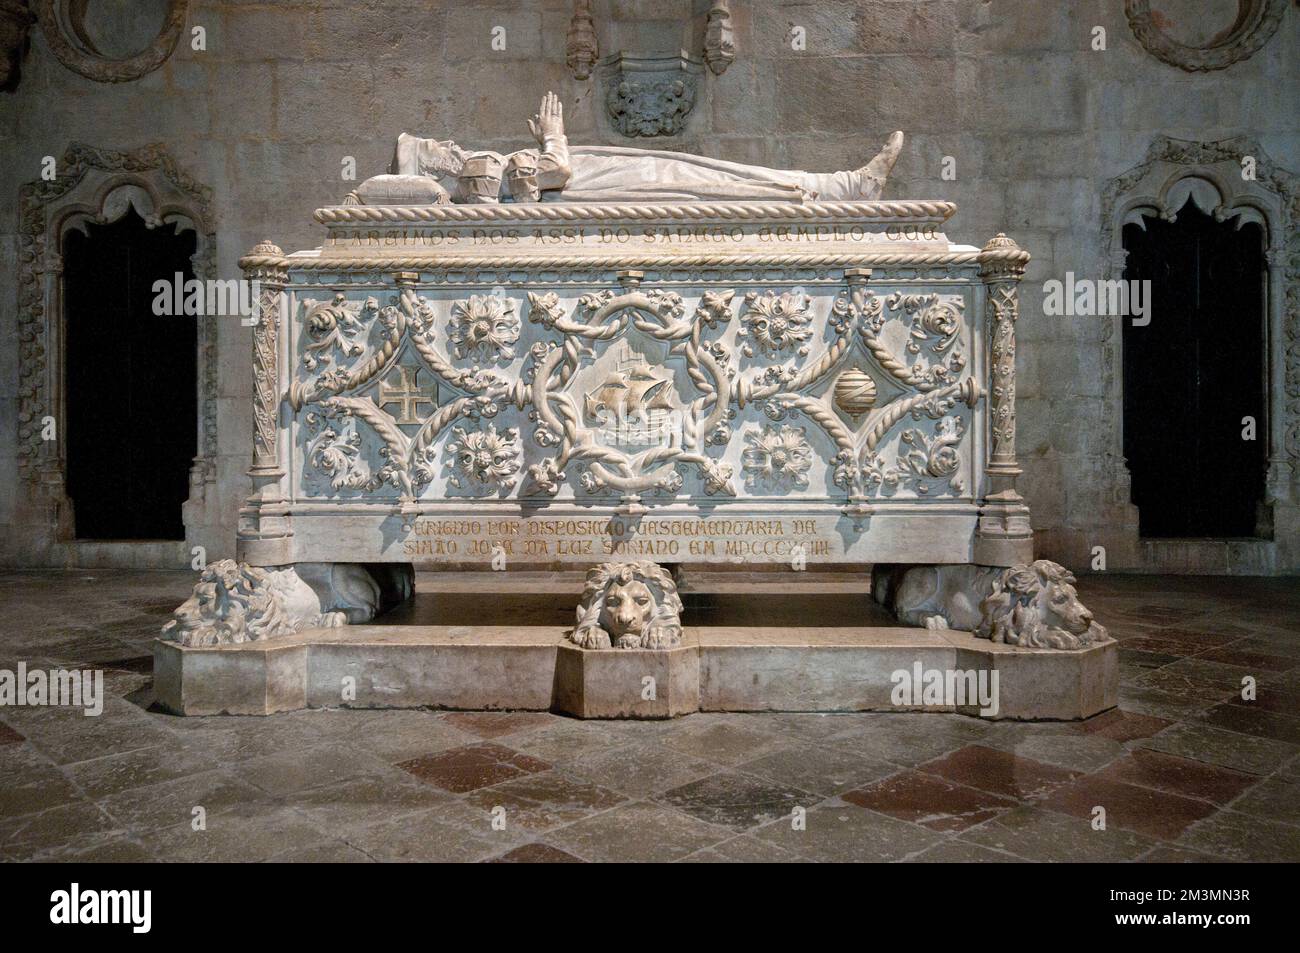 Grab (vom Bildhauer Costa Mota) des portugiesischen Entdeckers Vasco da Gama (1469-1524), Kirche Santa Maria de Belem, Kloster Jeronimos, Lissabon, Portugal Stockfoto